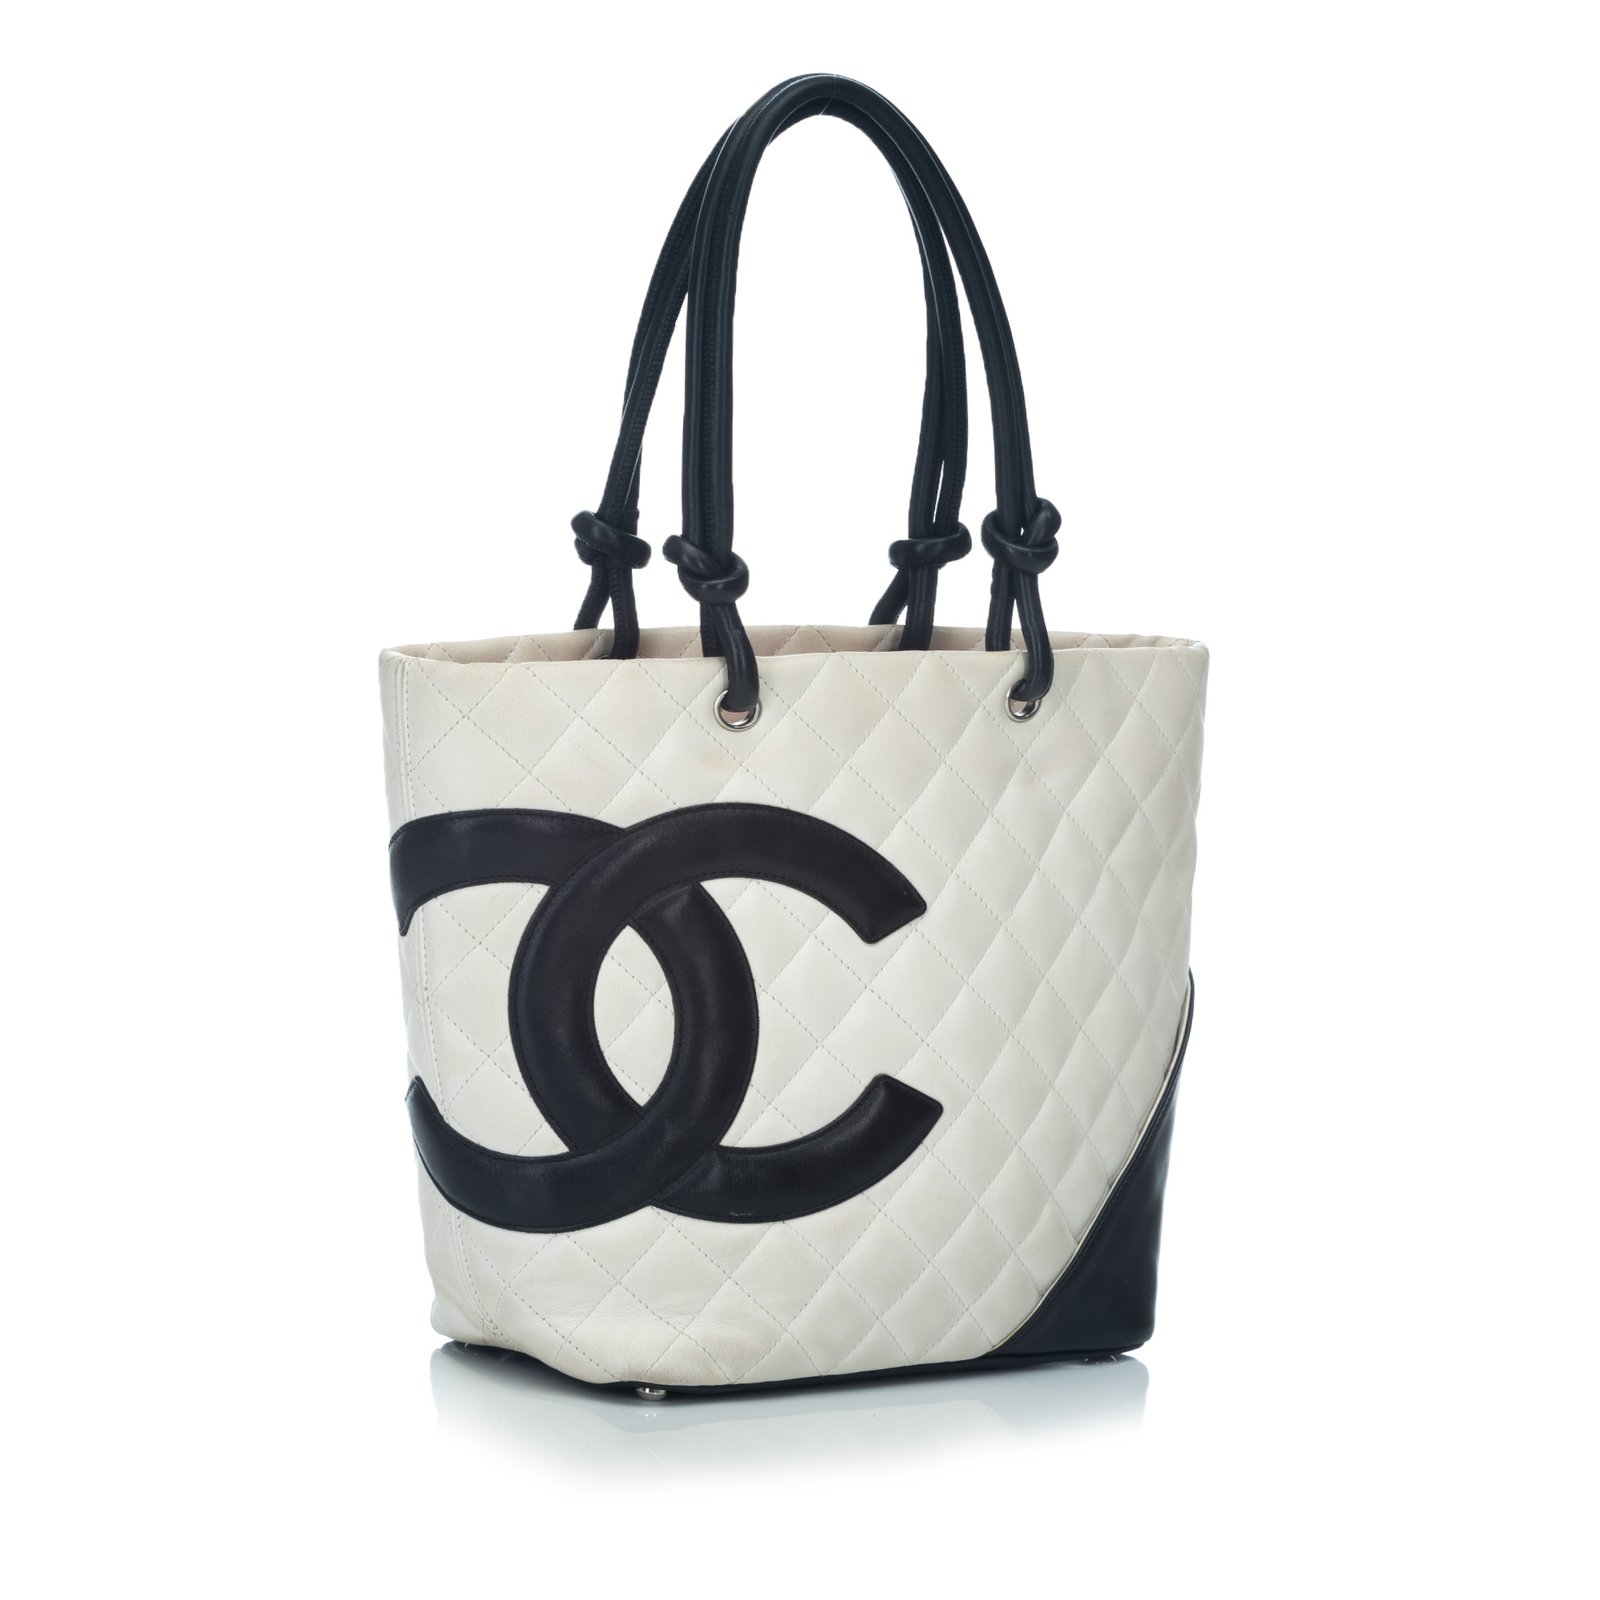 CHANEL Cambon Line Medium Tote Bag COCO Mark CC mark Tote Bag leather White